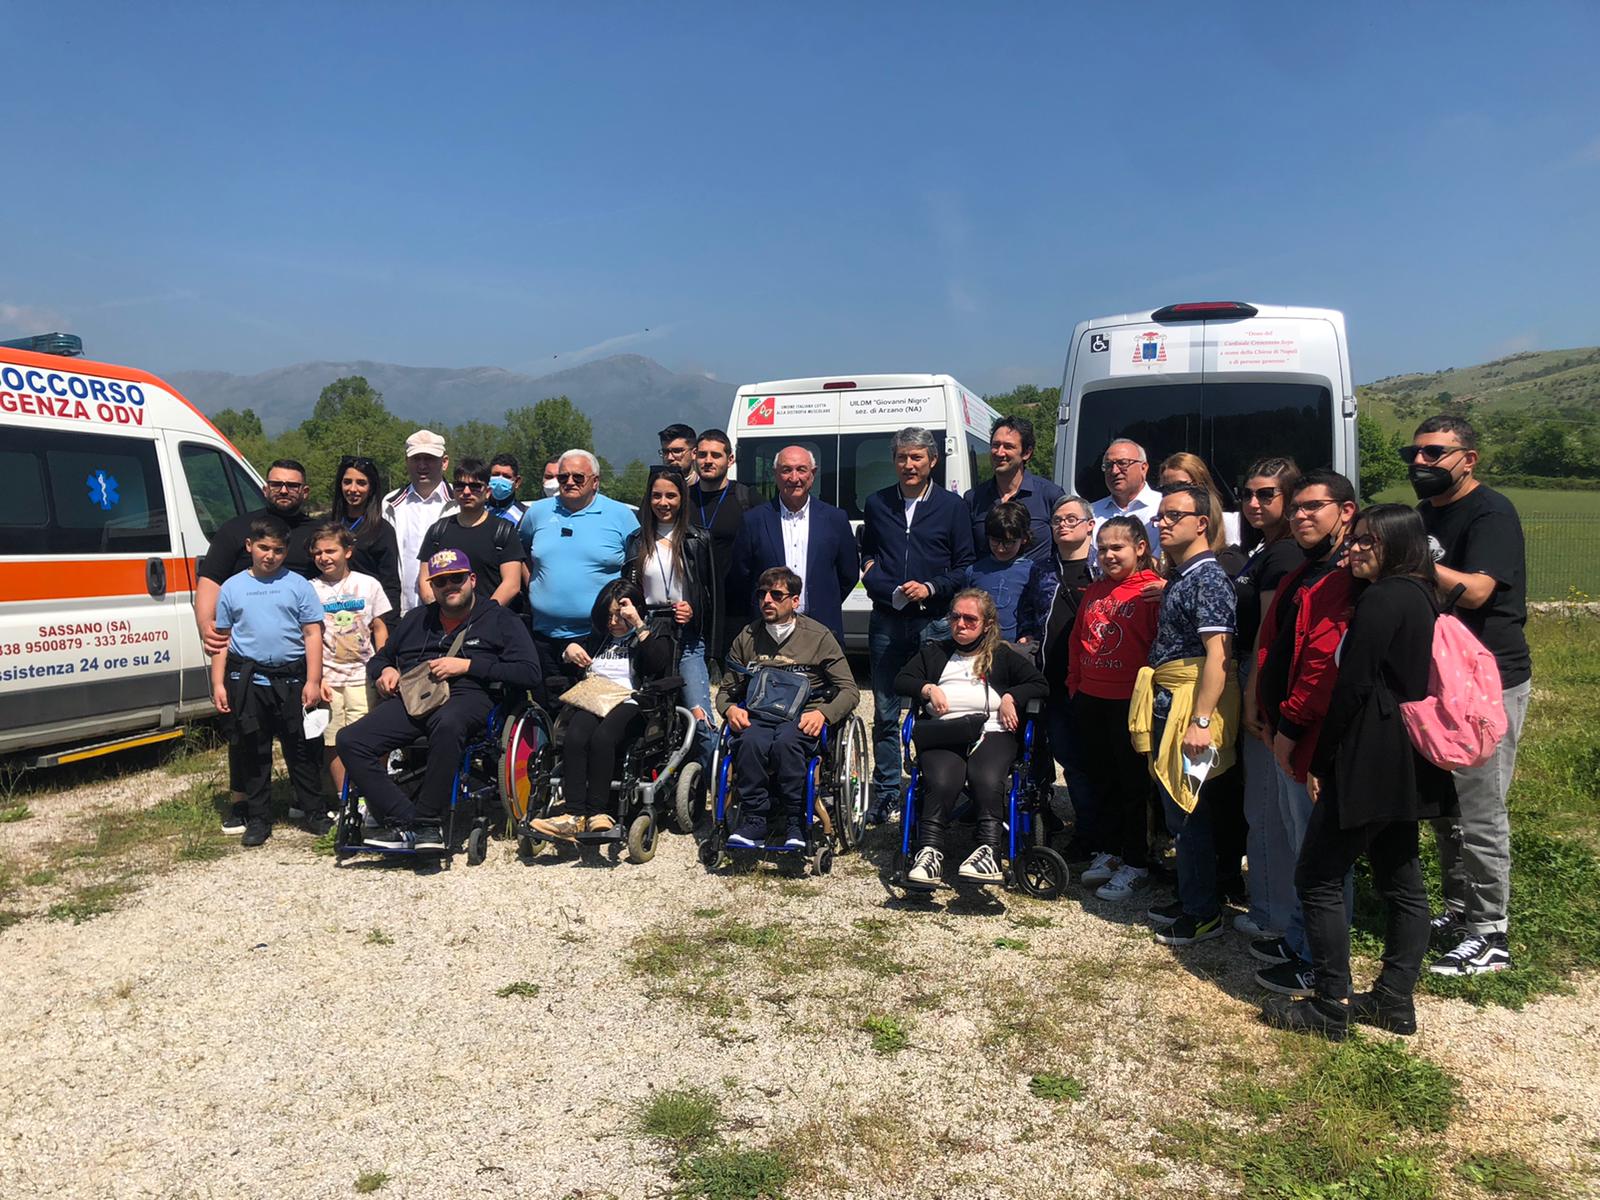 Al Comune di Sassano il premio al merito civico per la solidarietà e l’inclusione delle persone con disabilità